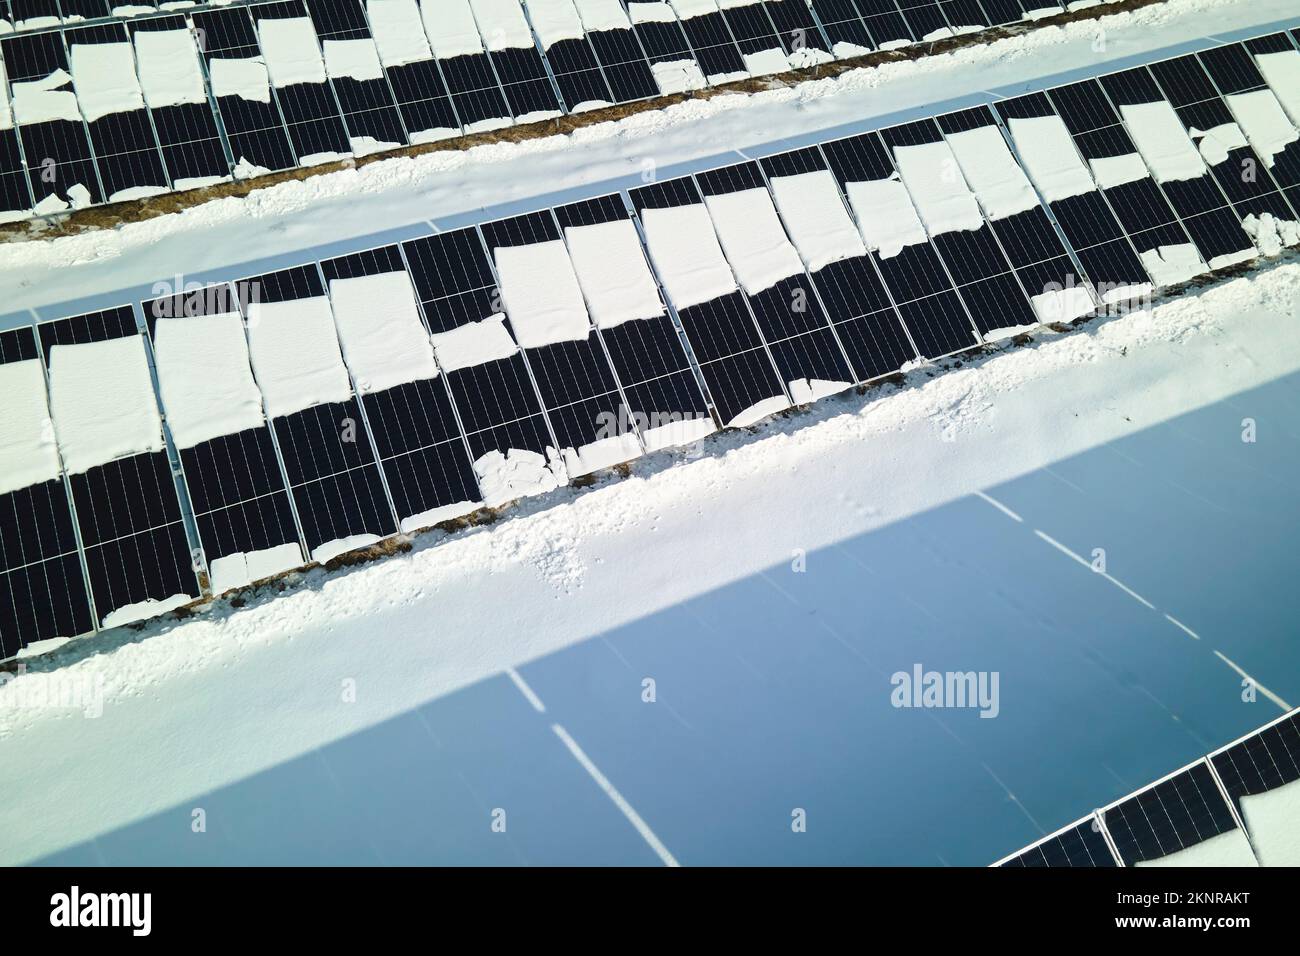 Luftaufnahme des Schneeschmelzens von überdachten Solarpaneelen in einem nachhaltigen Kraftwerk zur Erzeugung sauberer elektrischer Energie. Niedrig Stockfoto